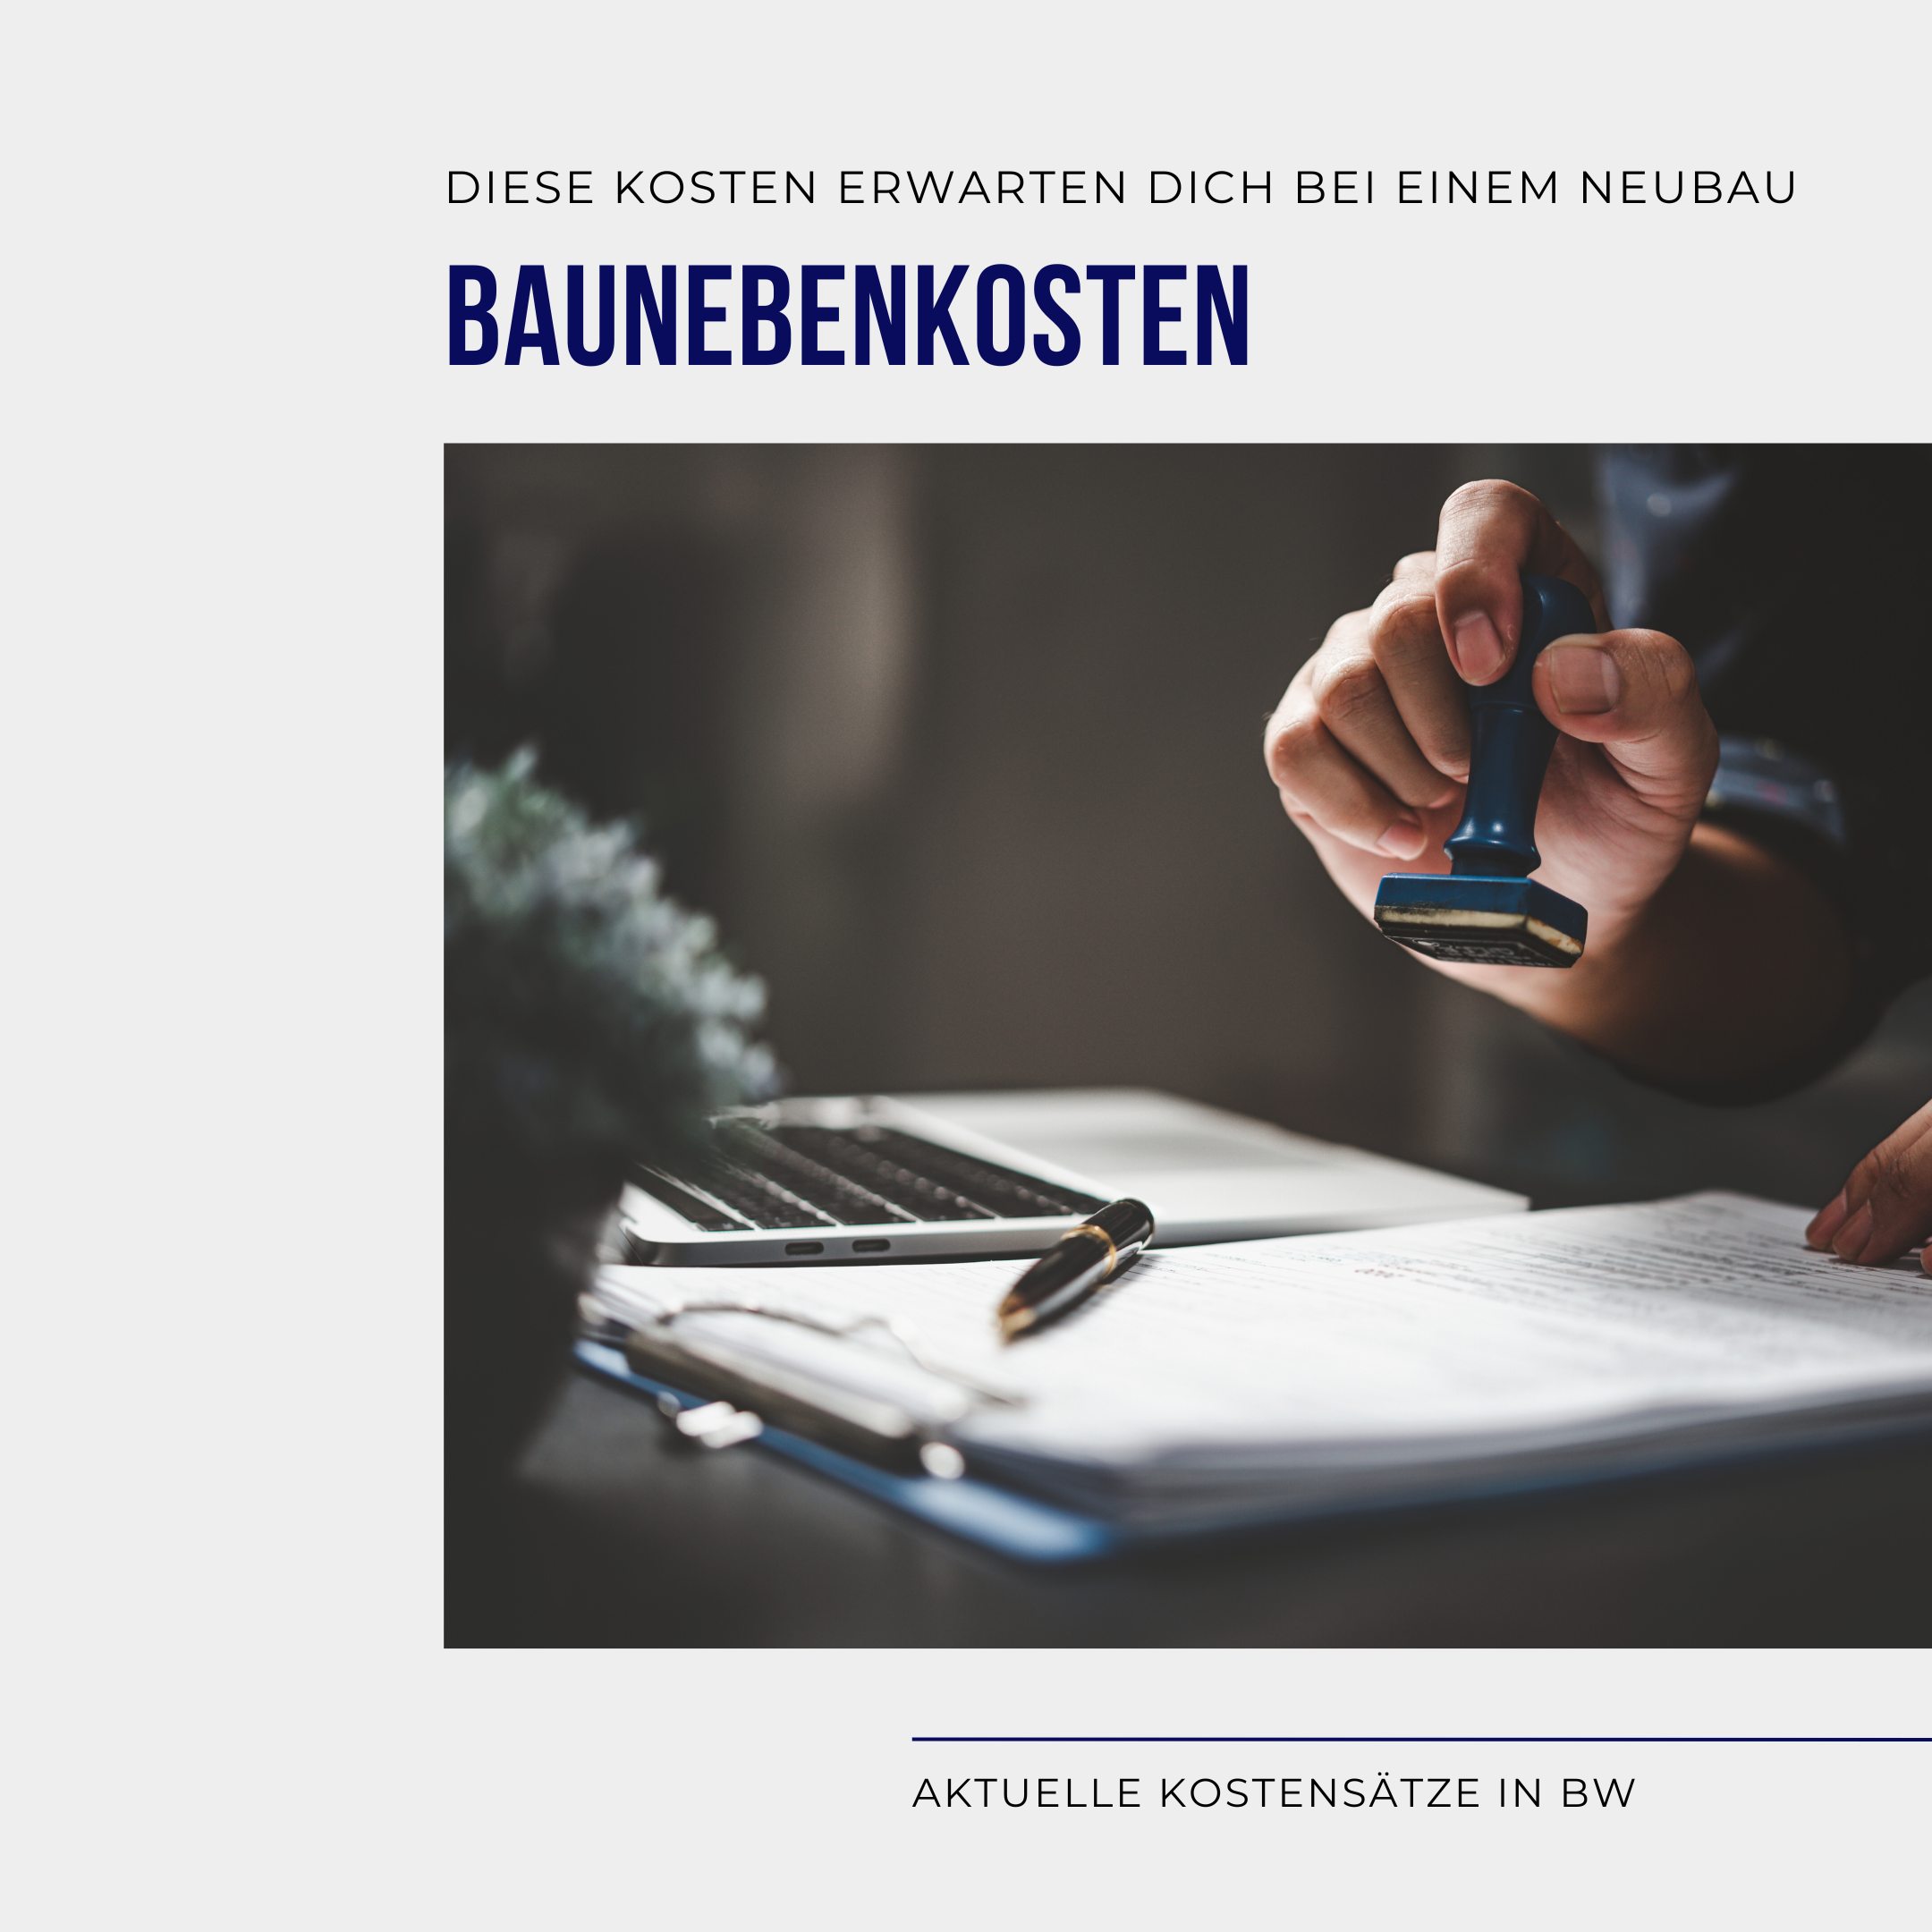 Entdecke unsere neuesten Blogbeiträge über die Baunebenkosten in Baden-Württemberg! Erfahre alles über die aktuellen Trends, Kostenfaktoren und wichtige Informationen, die du bei deinem Bauprojekt beachten solltest. Lass dich von unseren Experten beraten und erhalte wertvolle Einblicke für eine erfolgreiche Baufinanzierung in dieser Region.